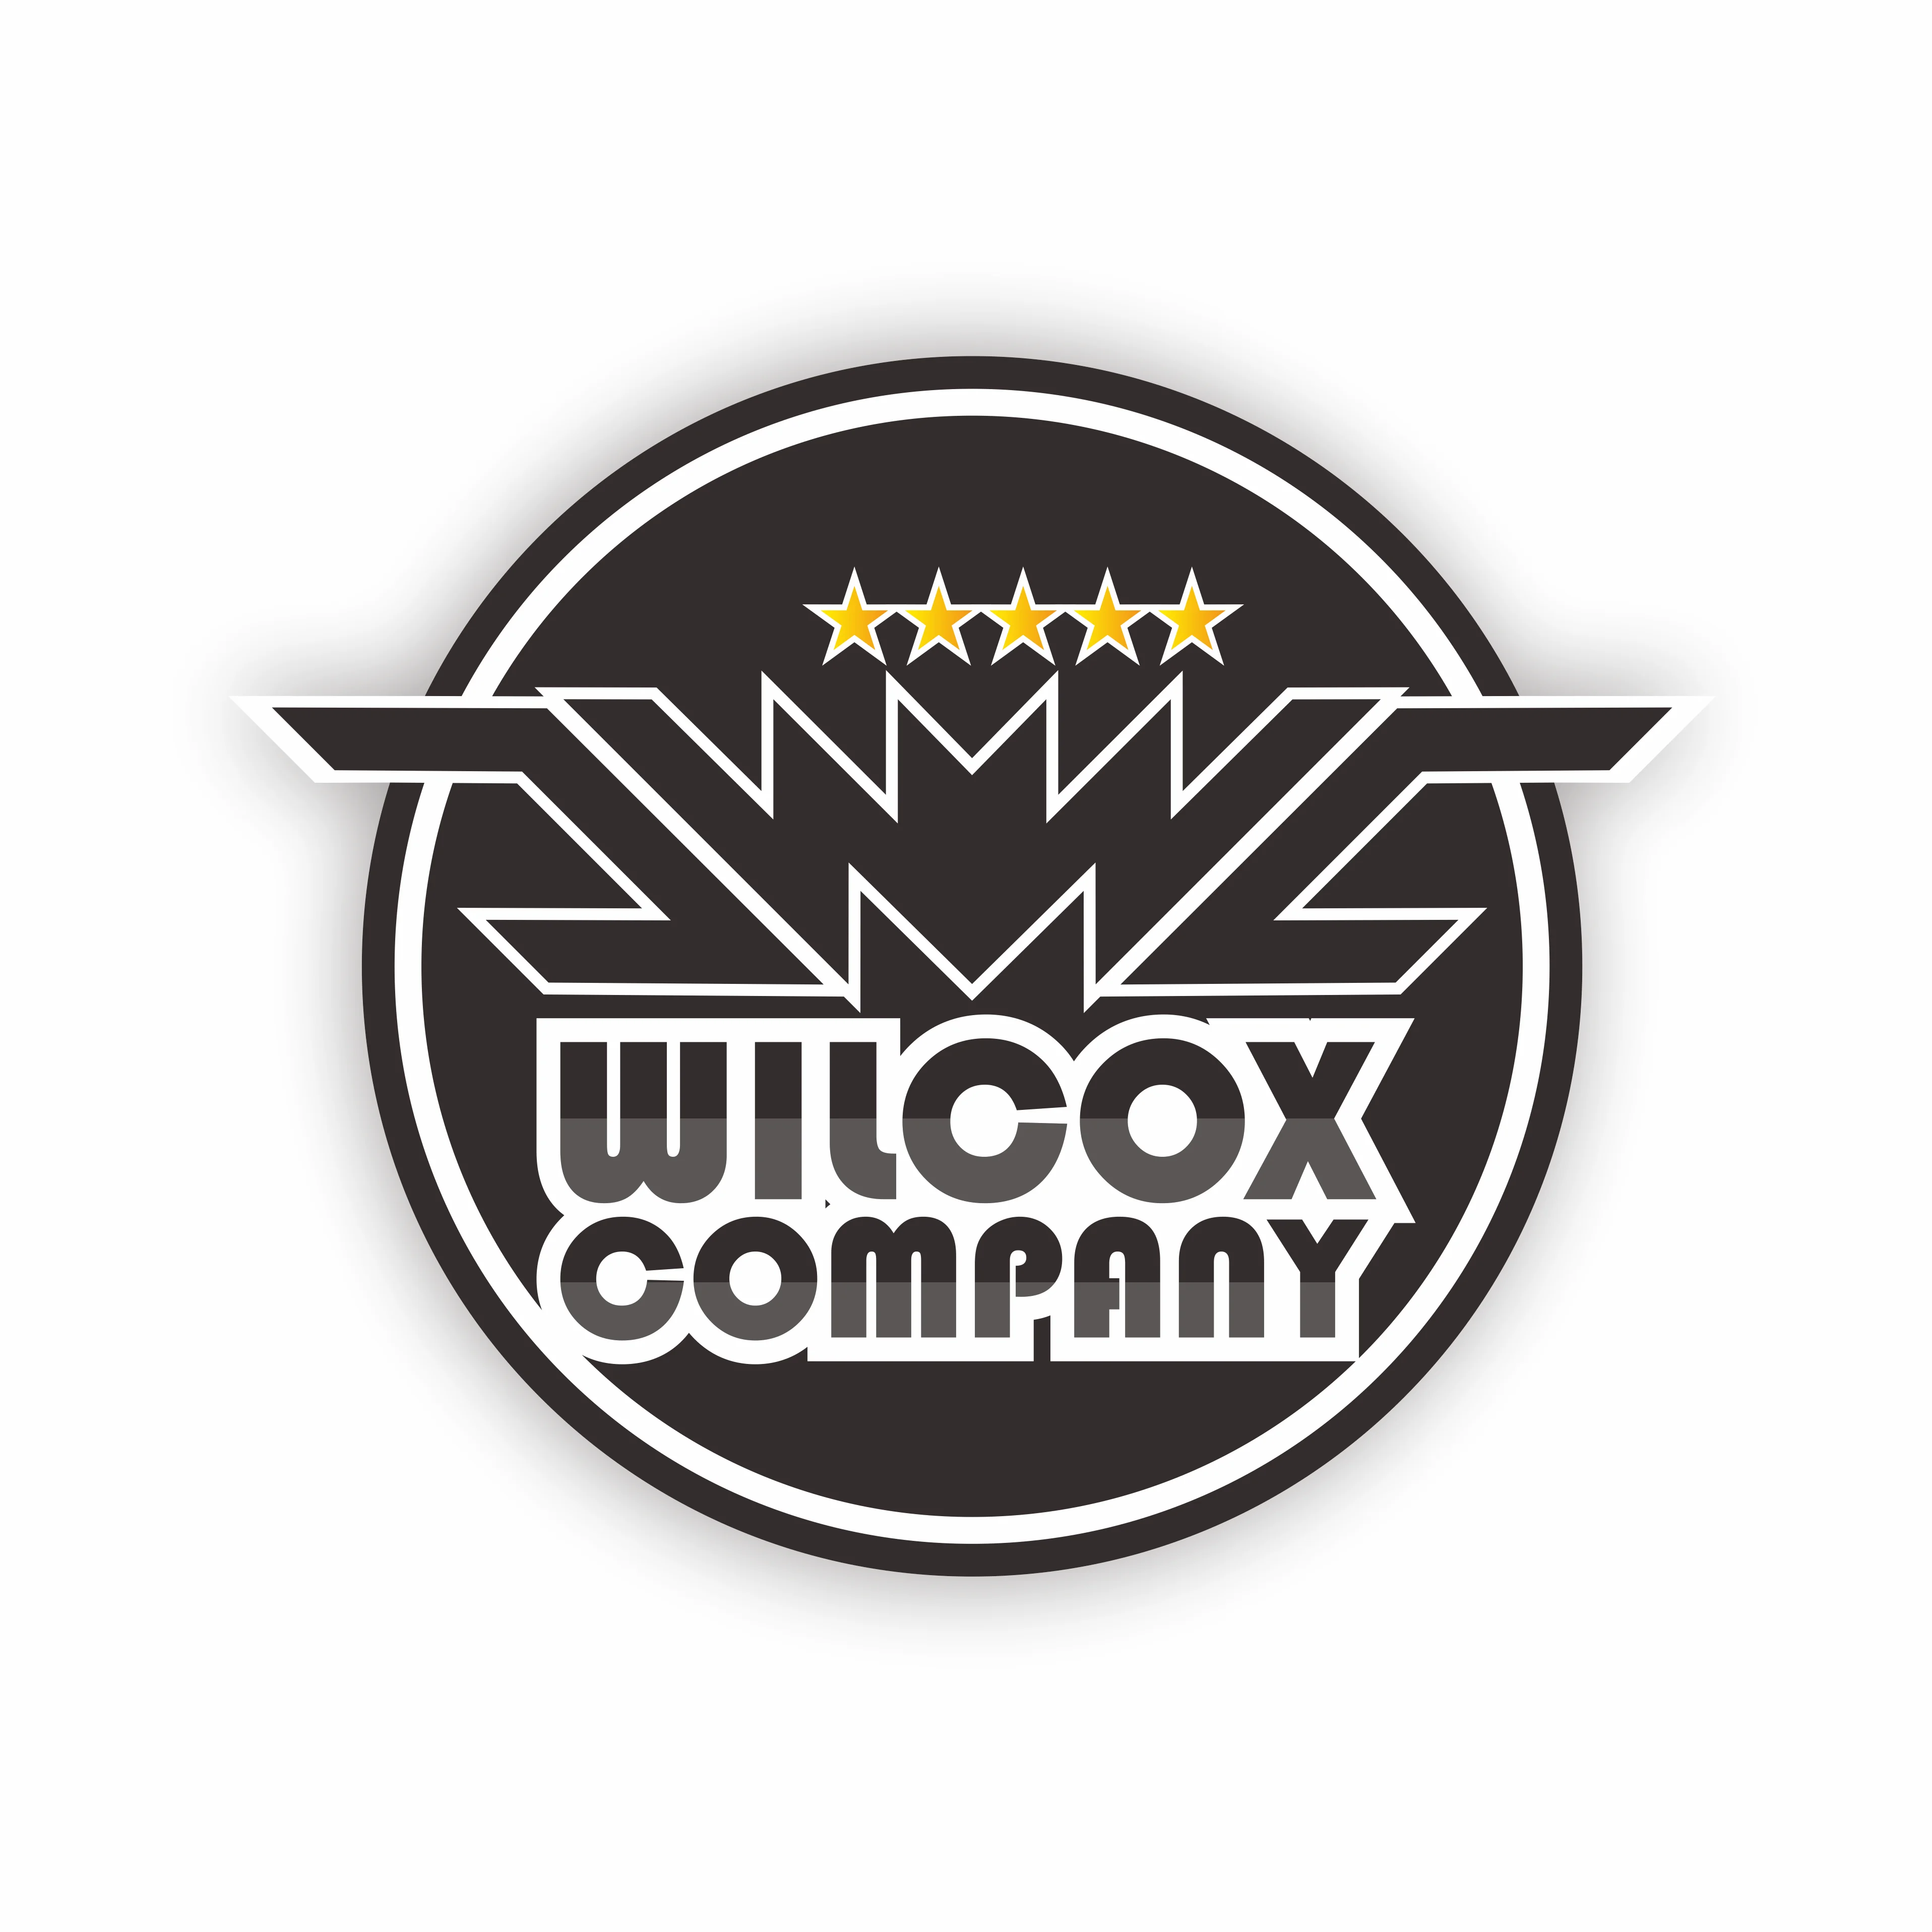 WILCOX